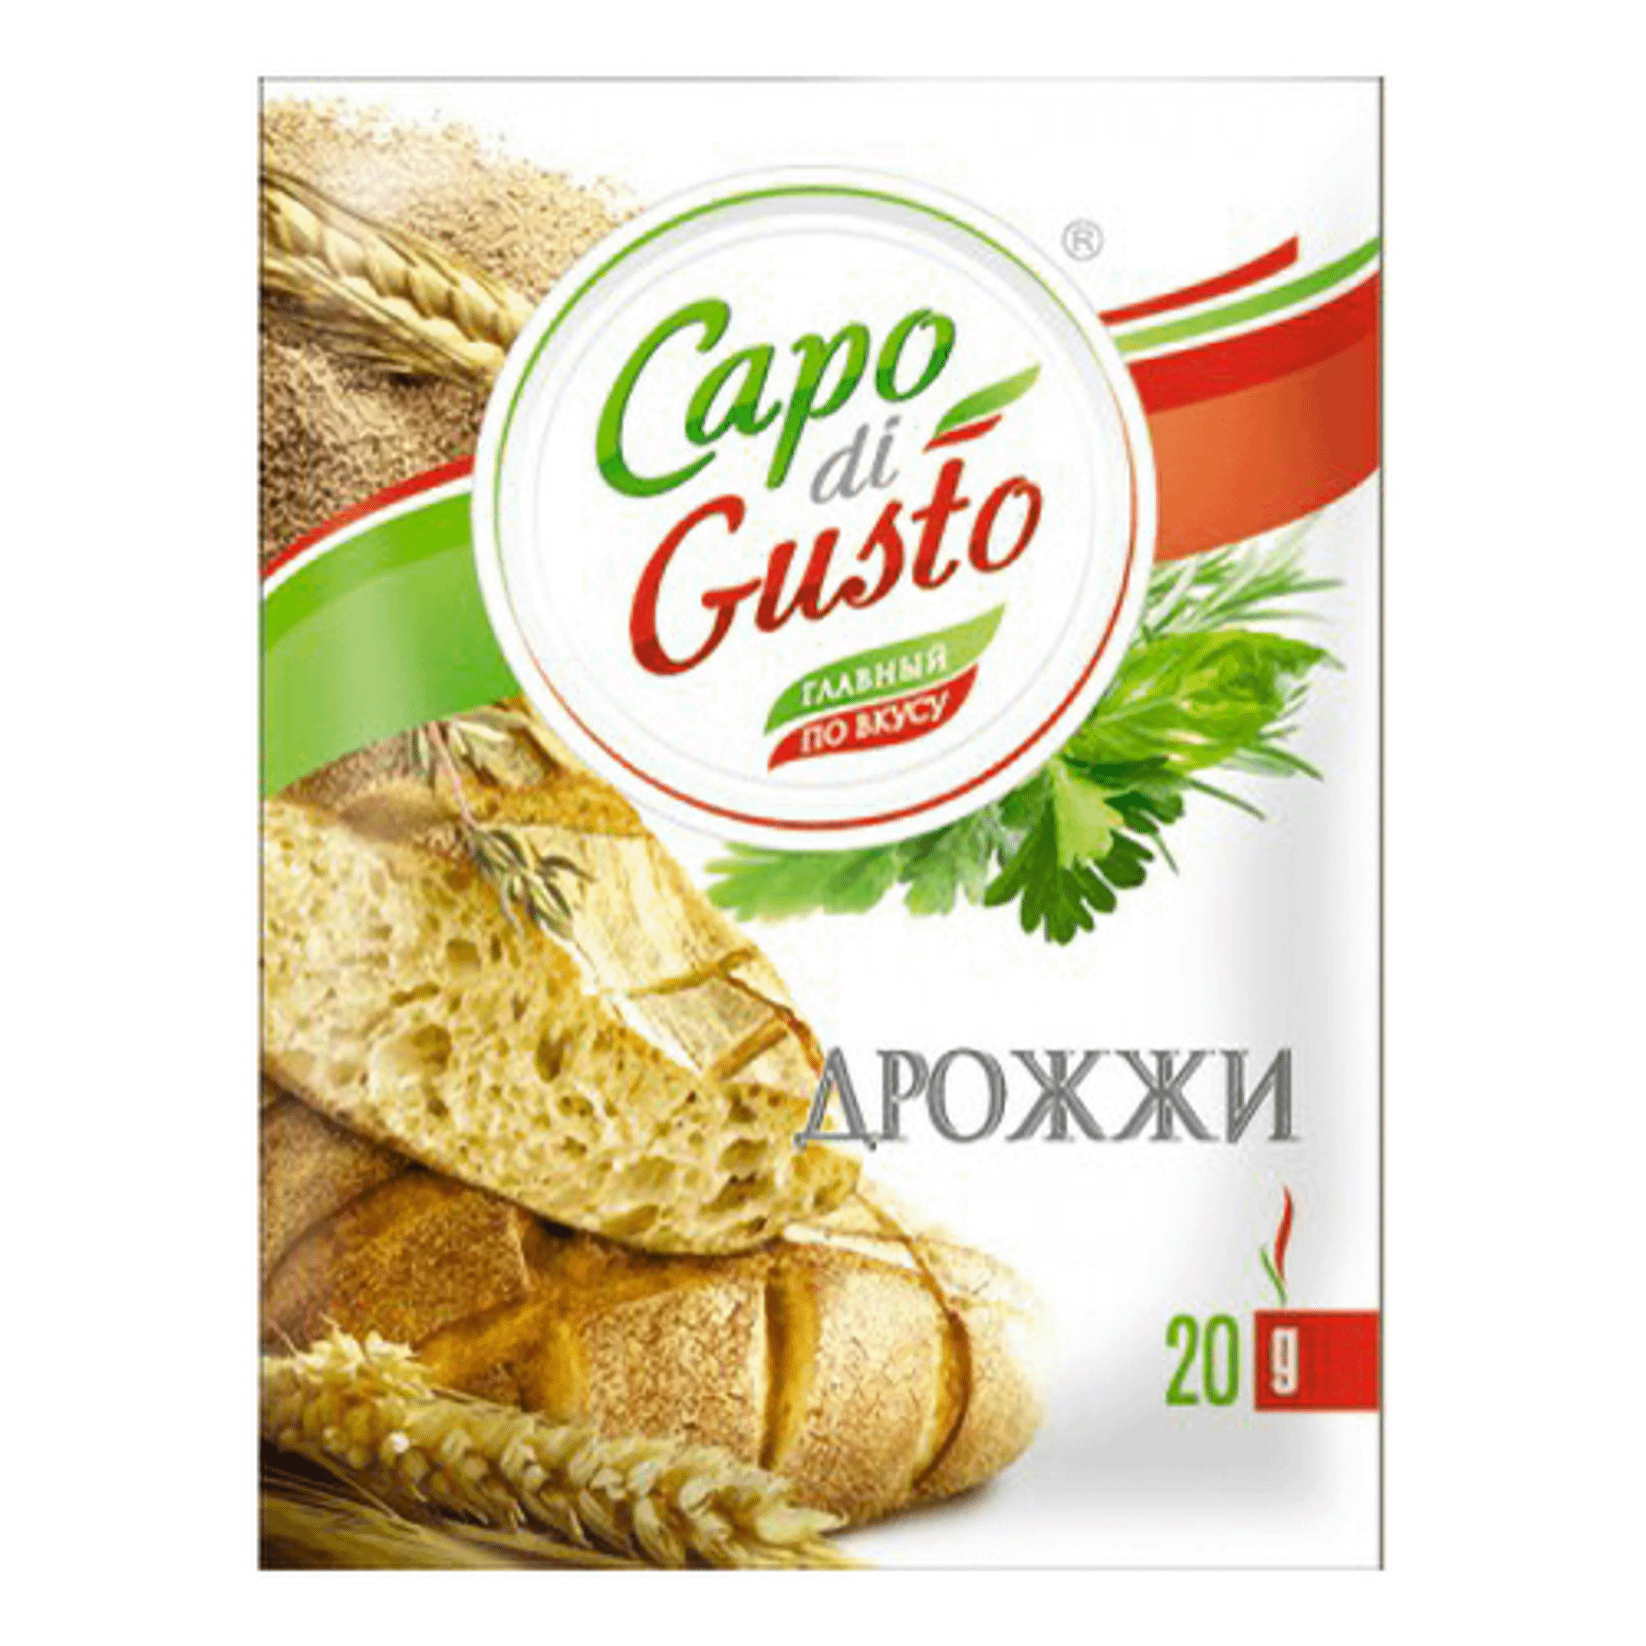 Дрожжи Capo di Gusto быстрорастворимые 20 г перец черный горошек capo di gusto 20 г